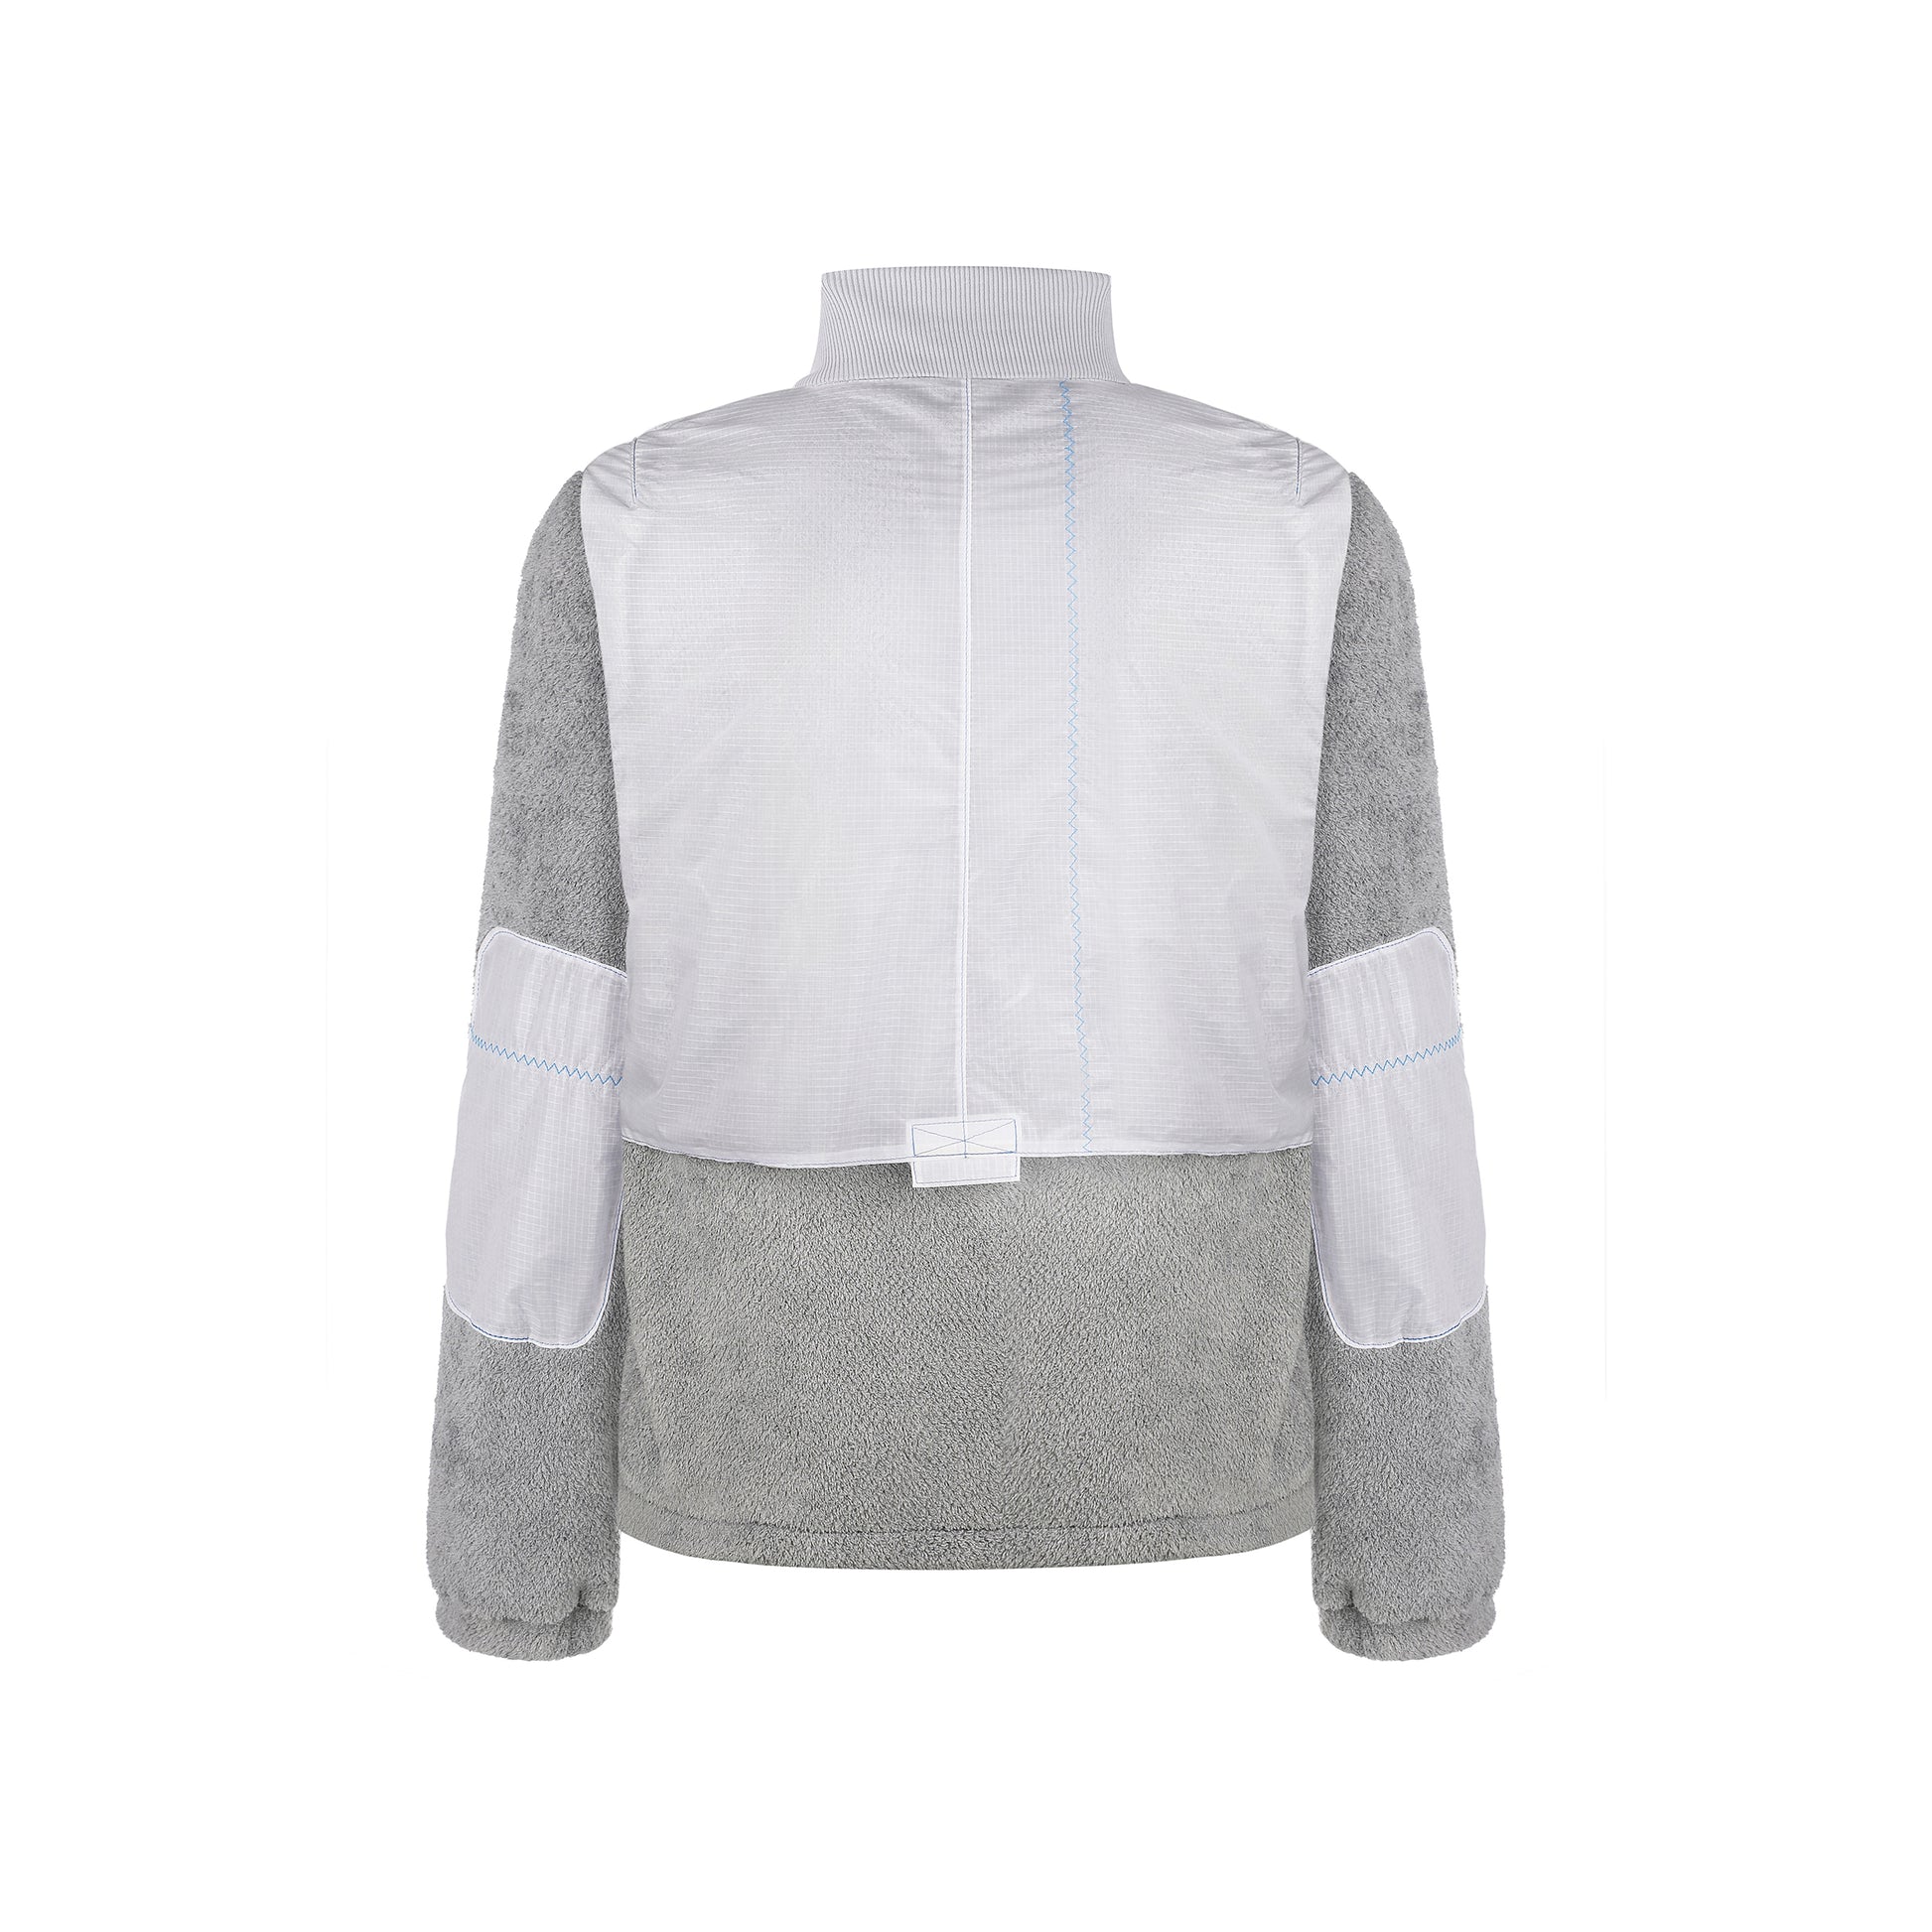 White&grey windproof fleece jacket